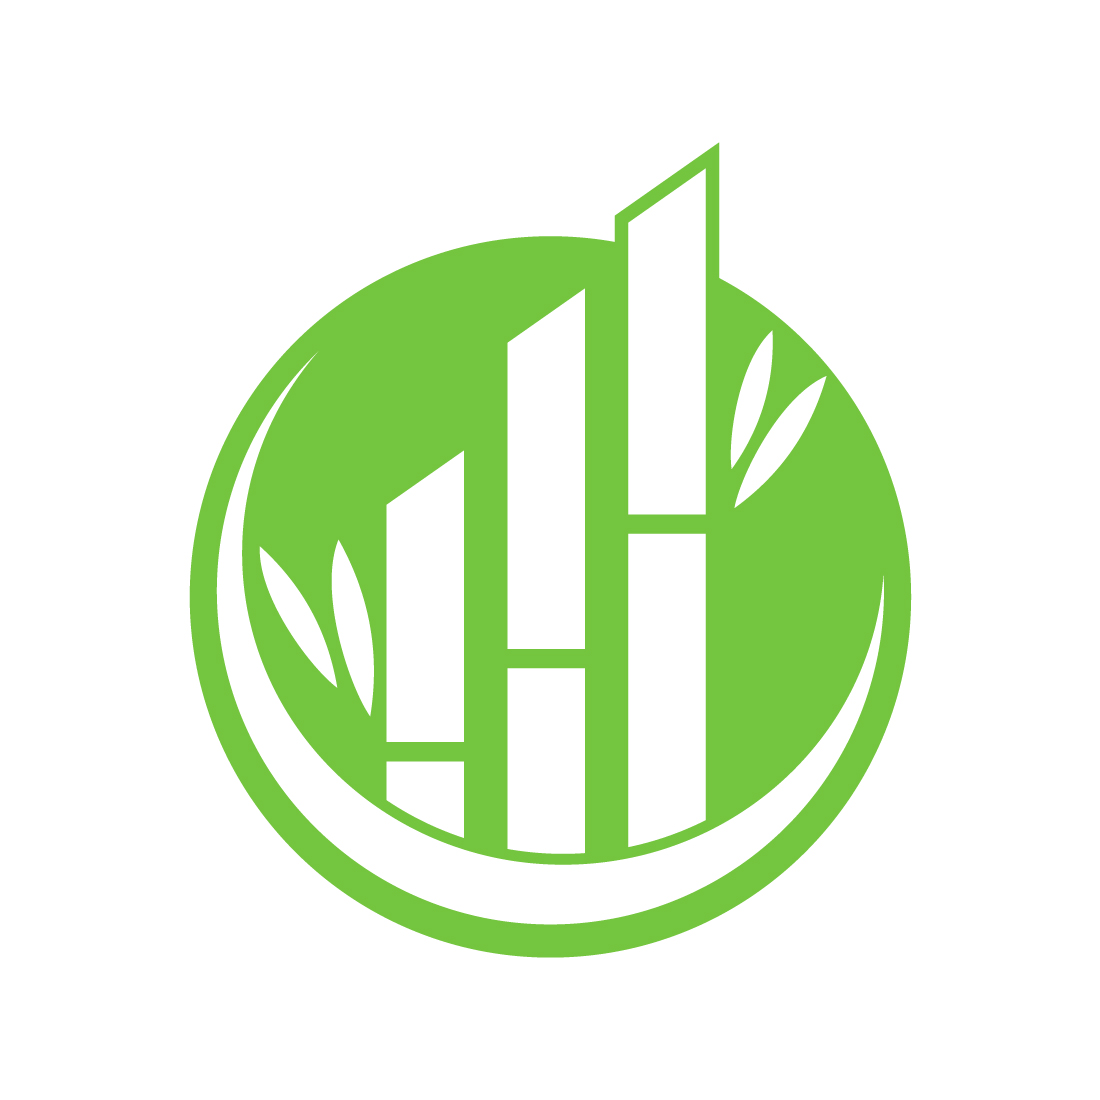 Bamboo Financial logo design, Vector design template preview image.